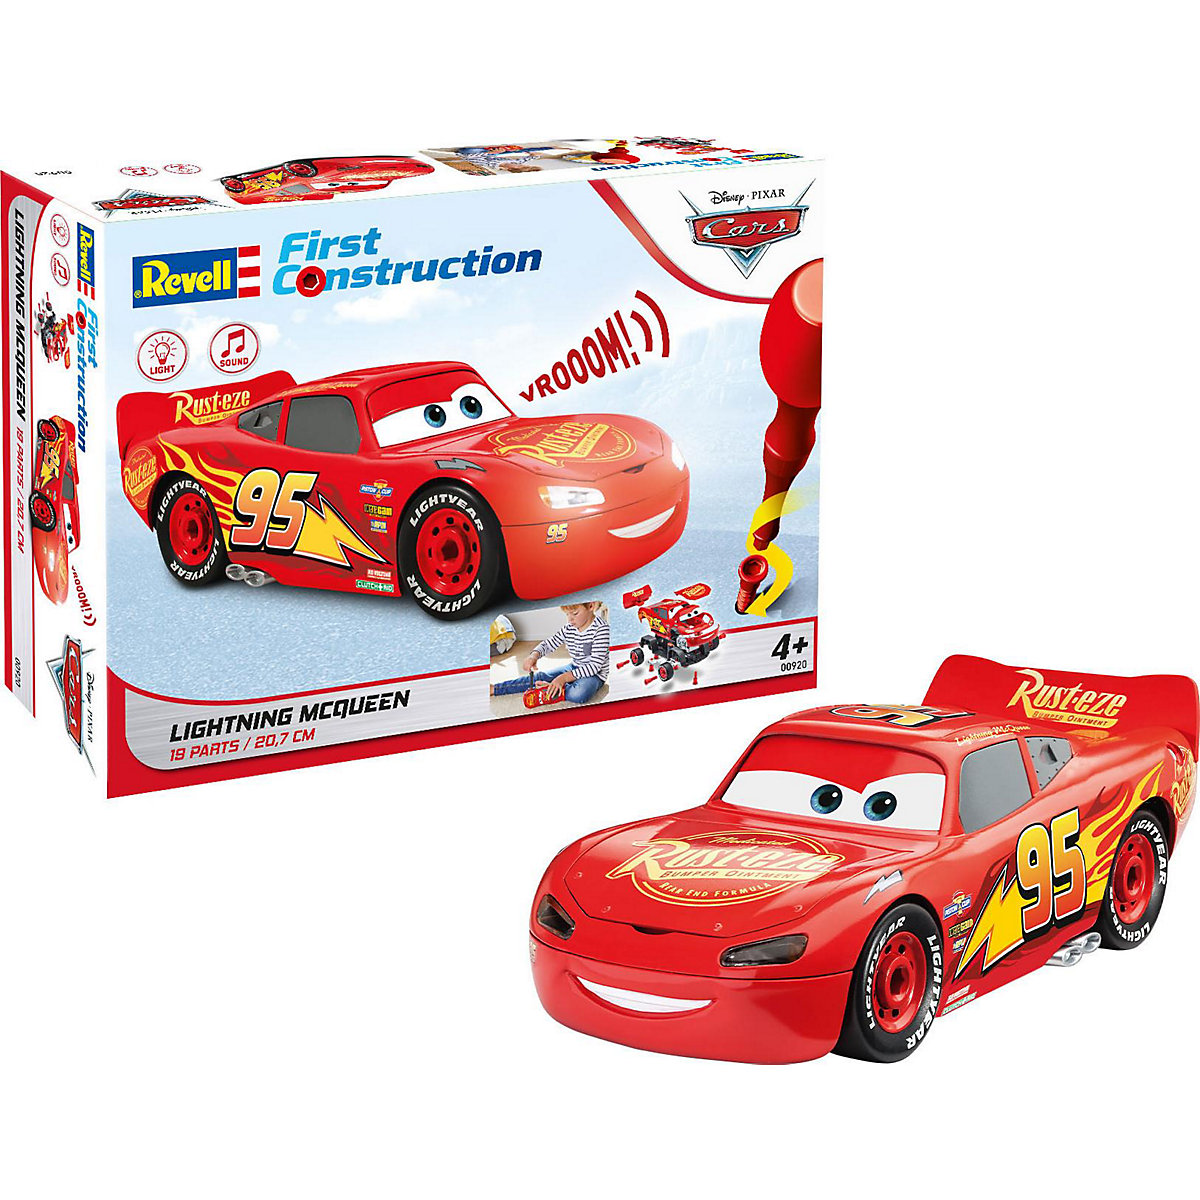 Lightning McQueen Disney-Cars Auto mit Licht&Sound Revell First Construction Bausatz für Kinder ab 4 im Maßstab 1:20 19 Teile 20 7 cm